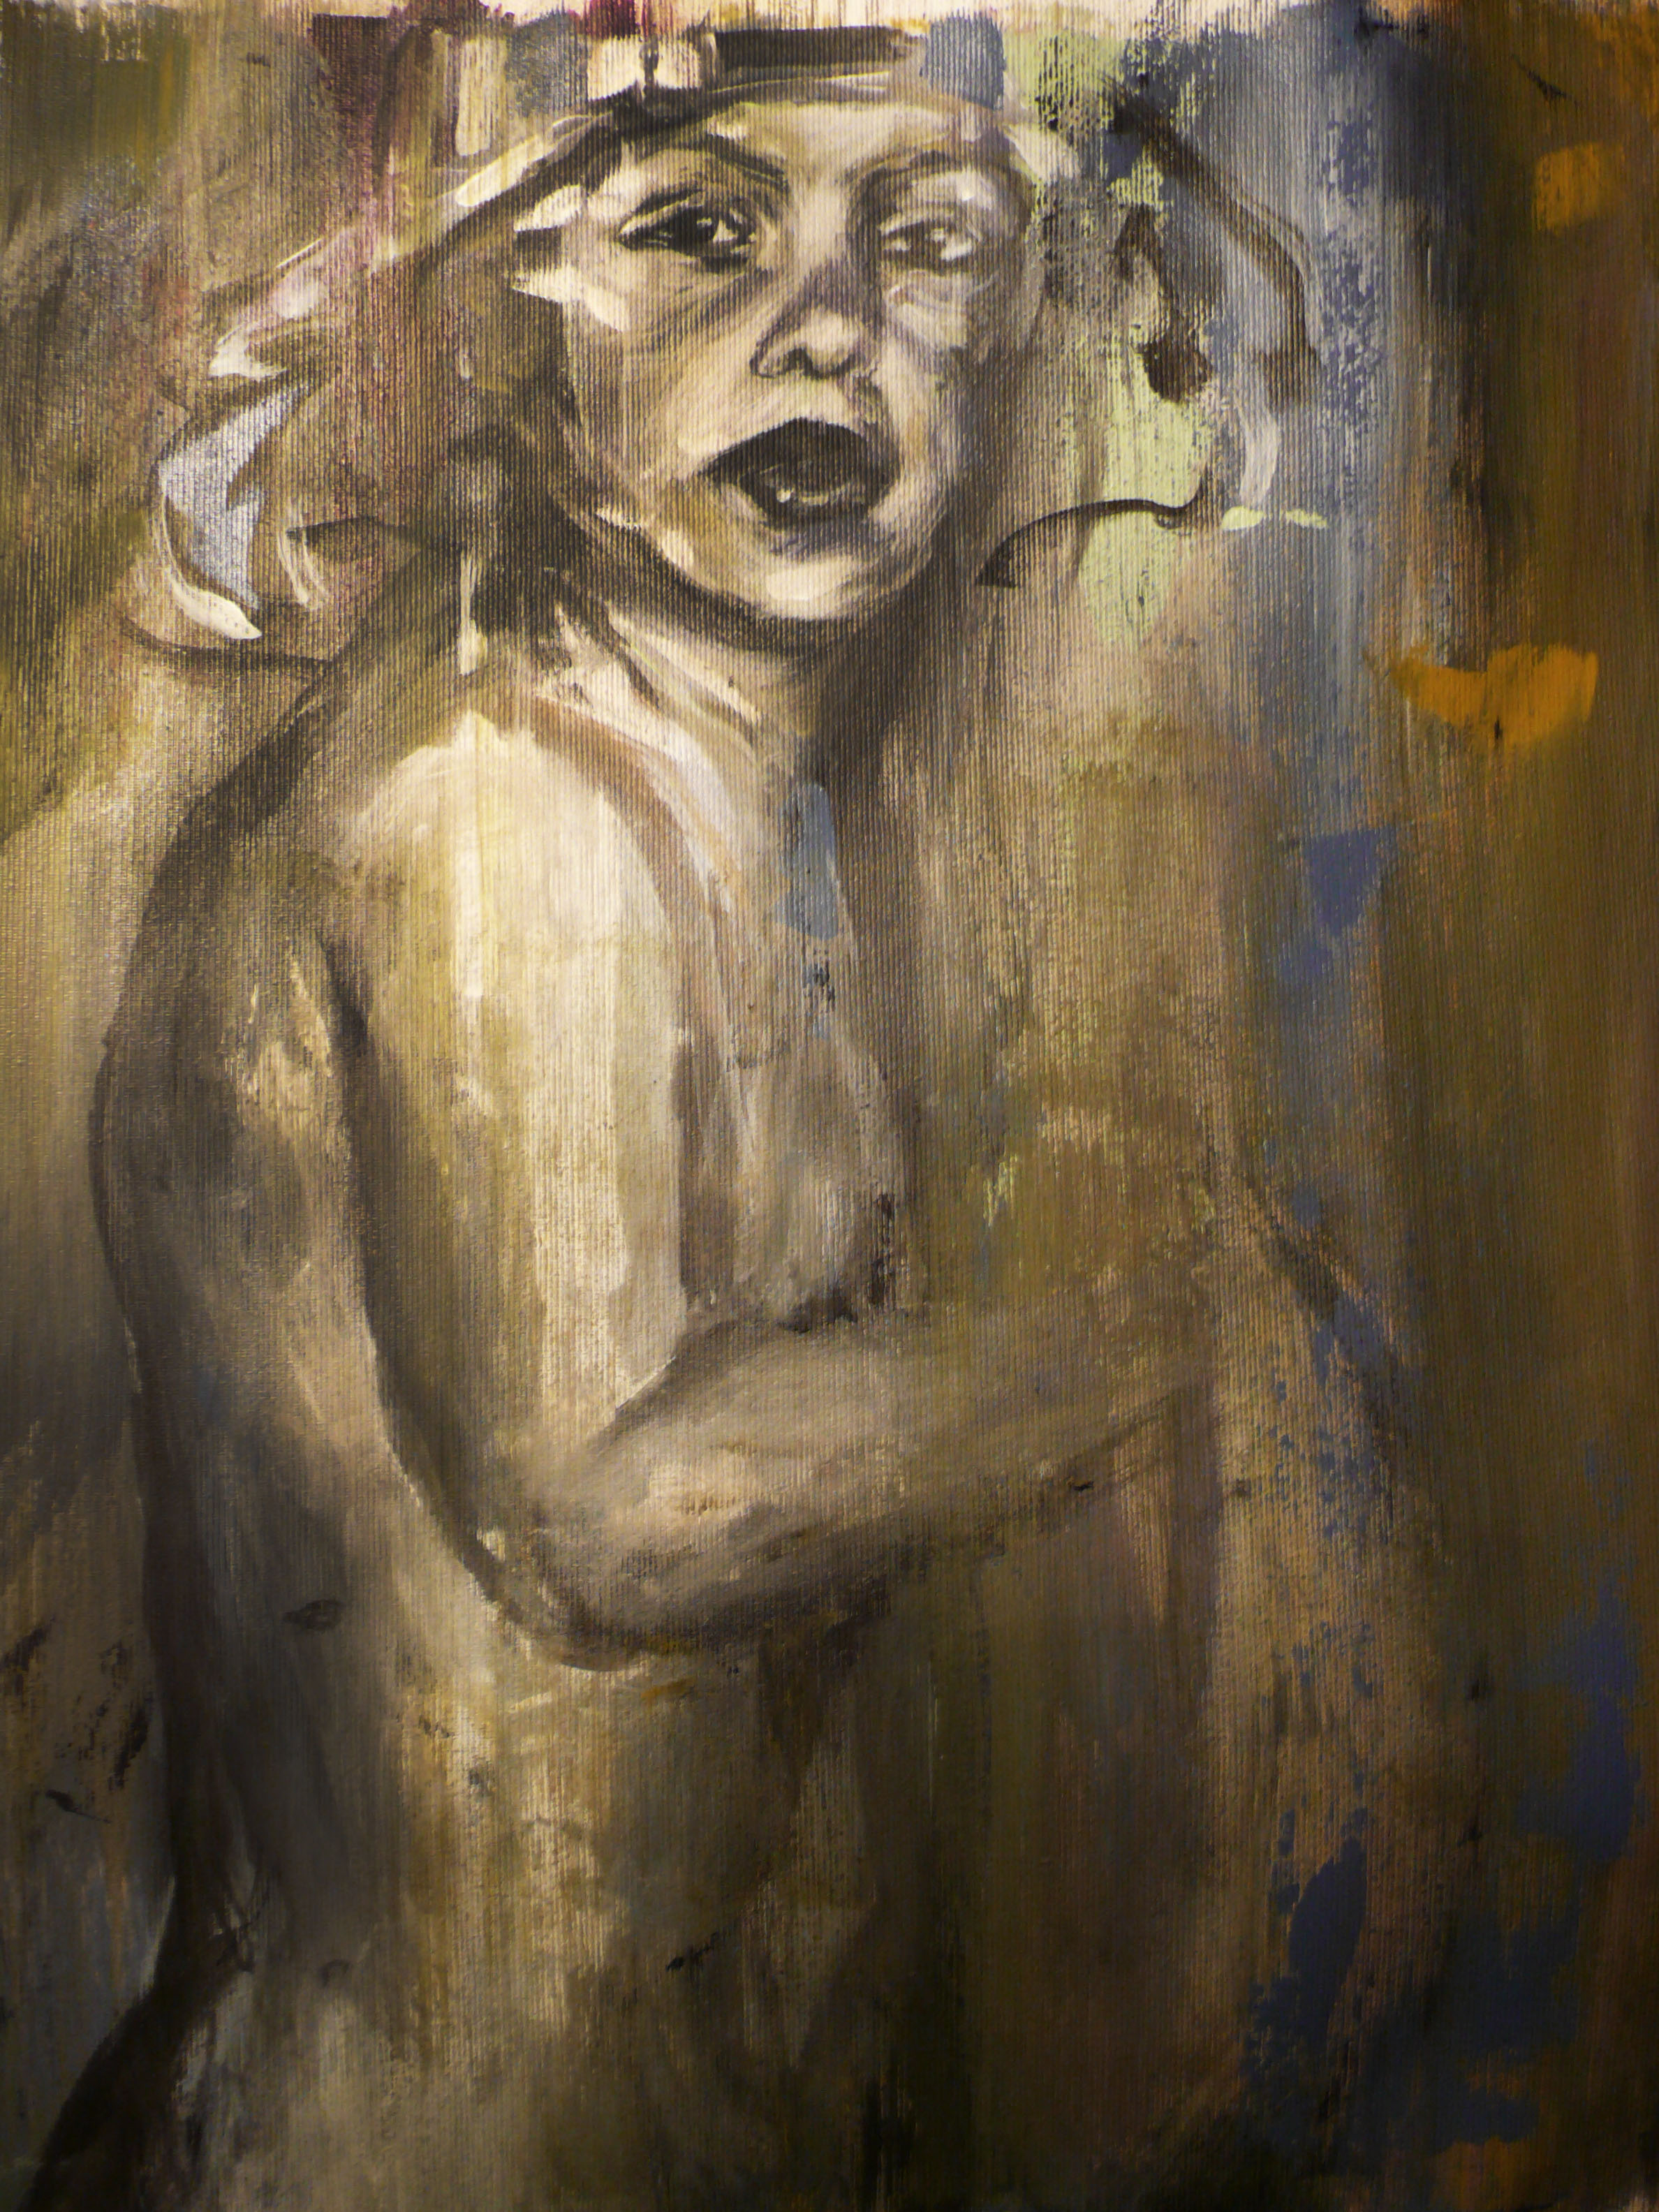 Acrylic on canvas, 40x40 cm, 2015